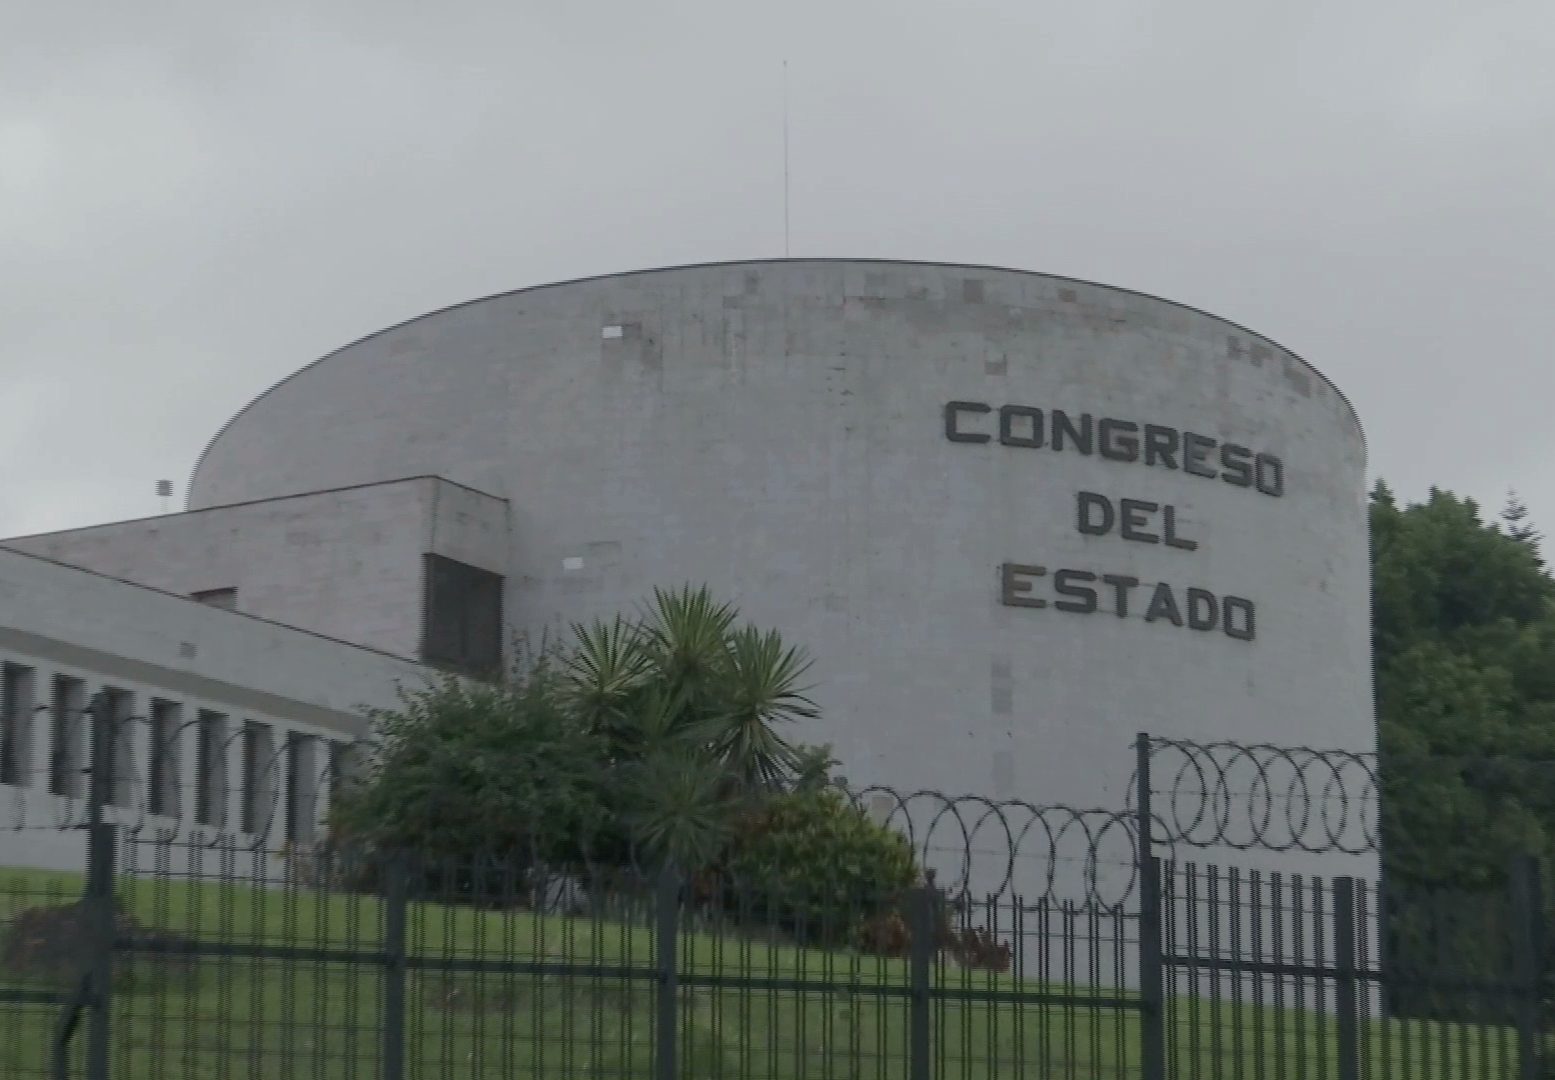 Congreso del Estado da entrada a solicitud de juicio político contra la síndica del ayuntamiento de Coatzacoalcos